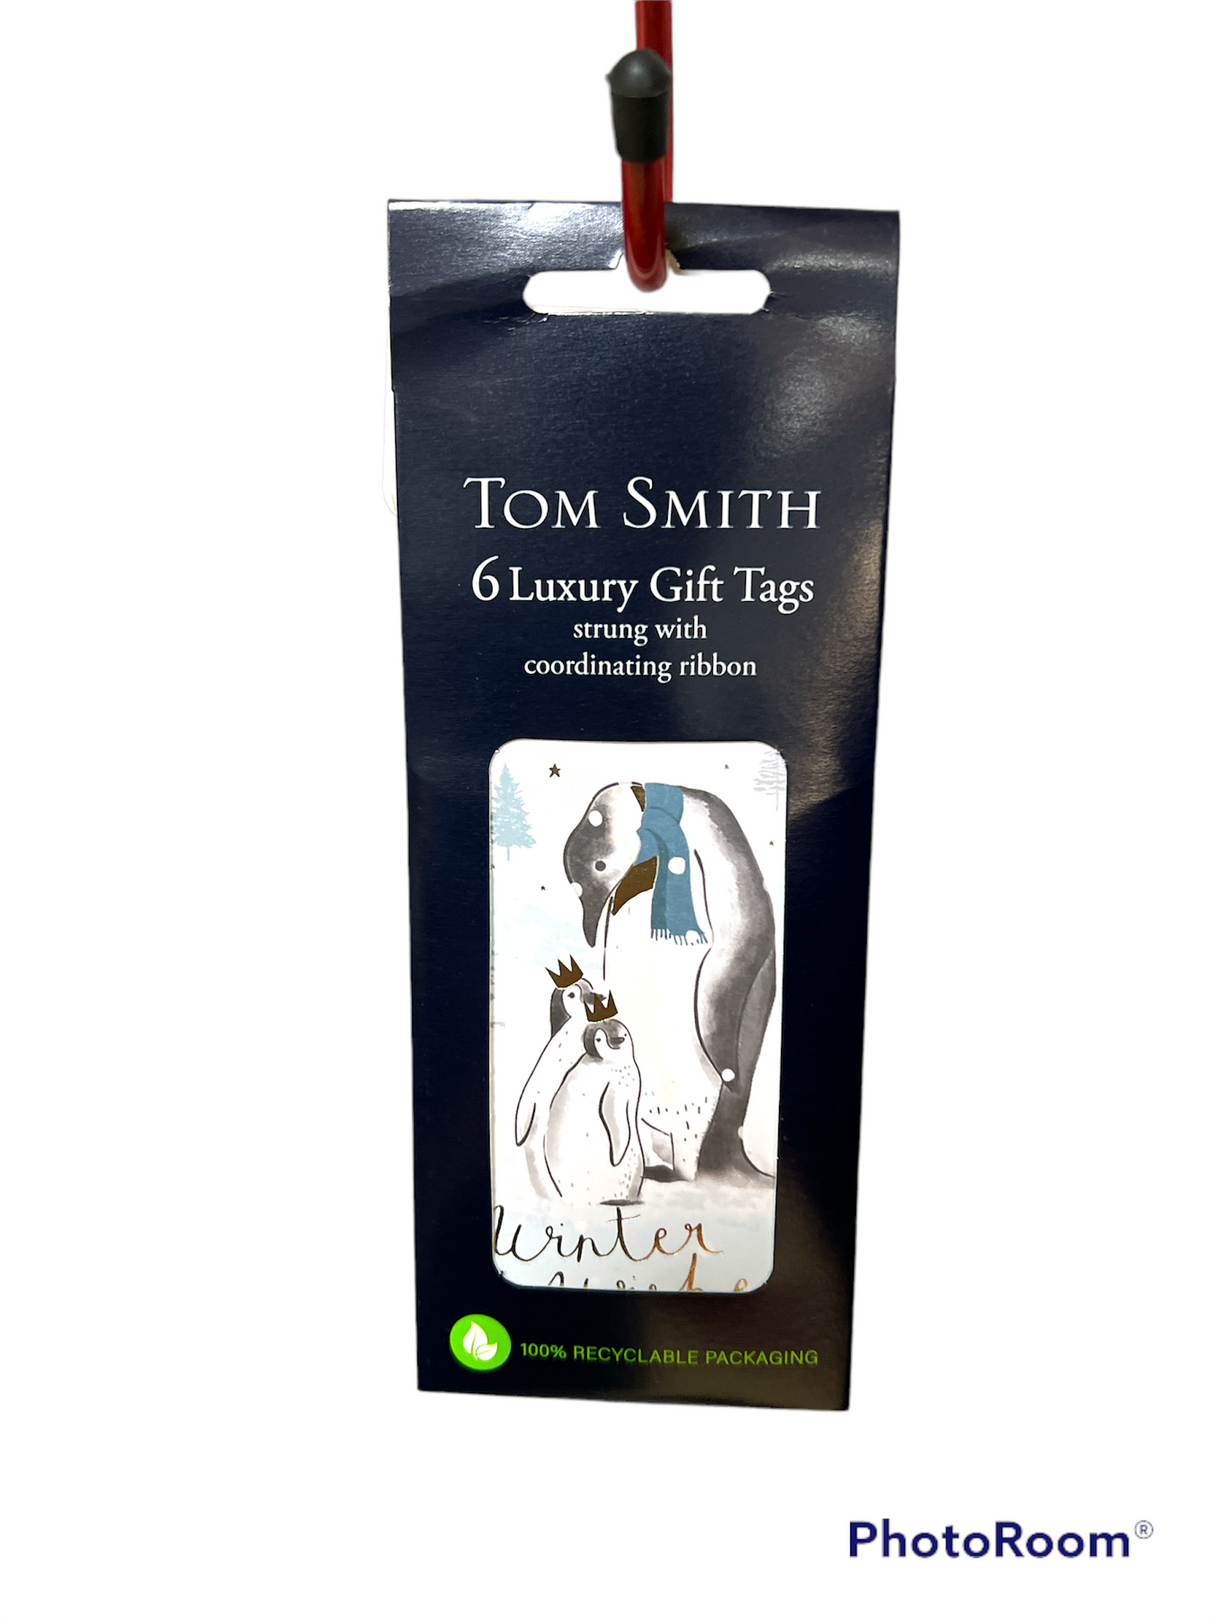 6 etiquetas de regalo de lujo de Tom Smith